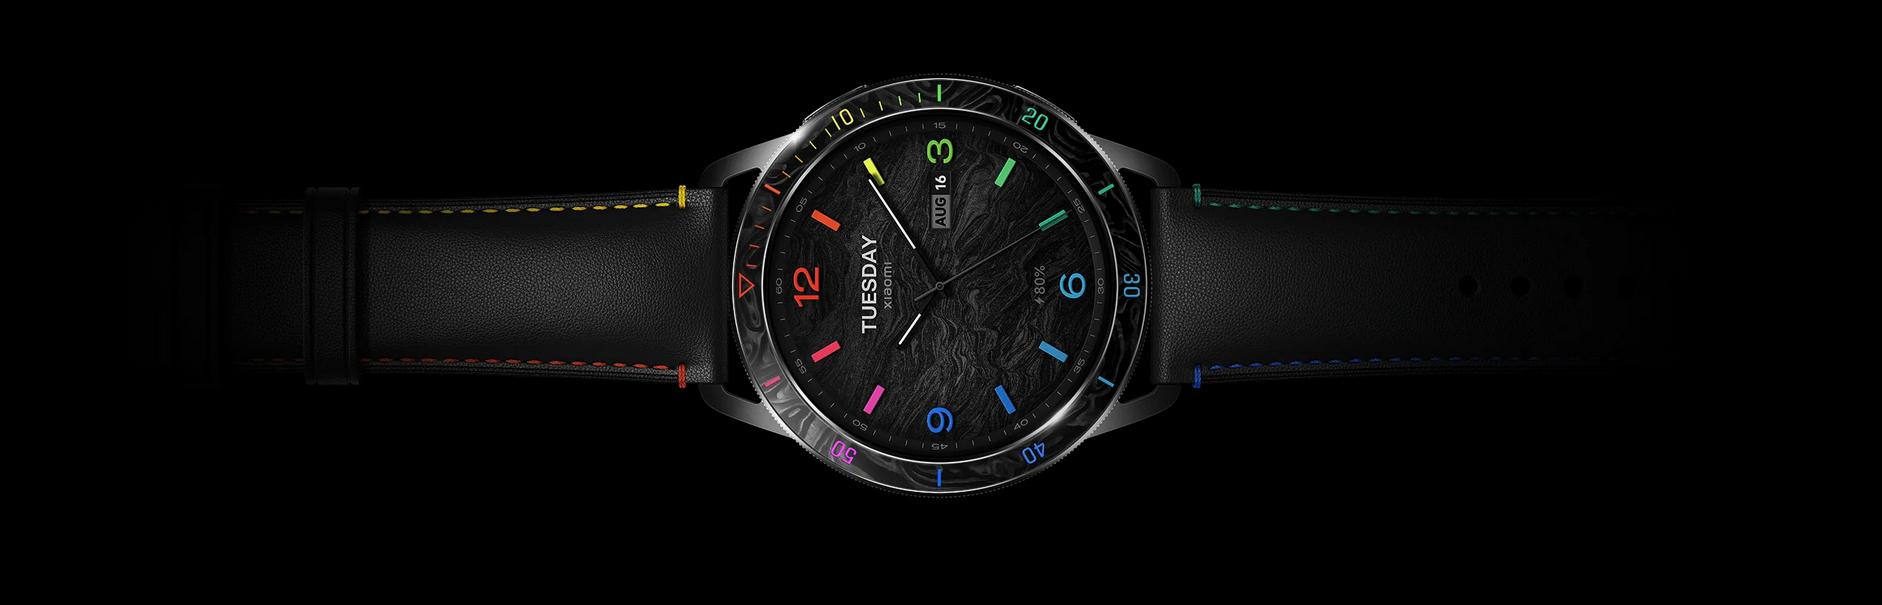 Smartwatch Xiaomi Watch S3 - wyświetlacz AMOLED 1,43\", częstotliwość odświeżania 60 Hz, 16,7 miliona kolorów